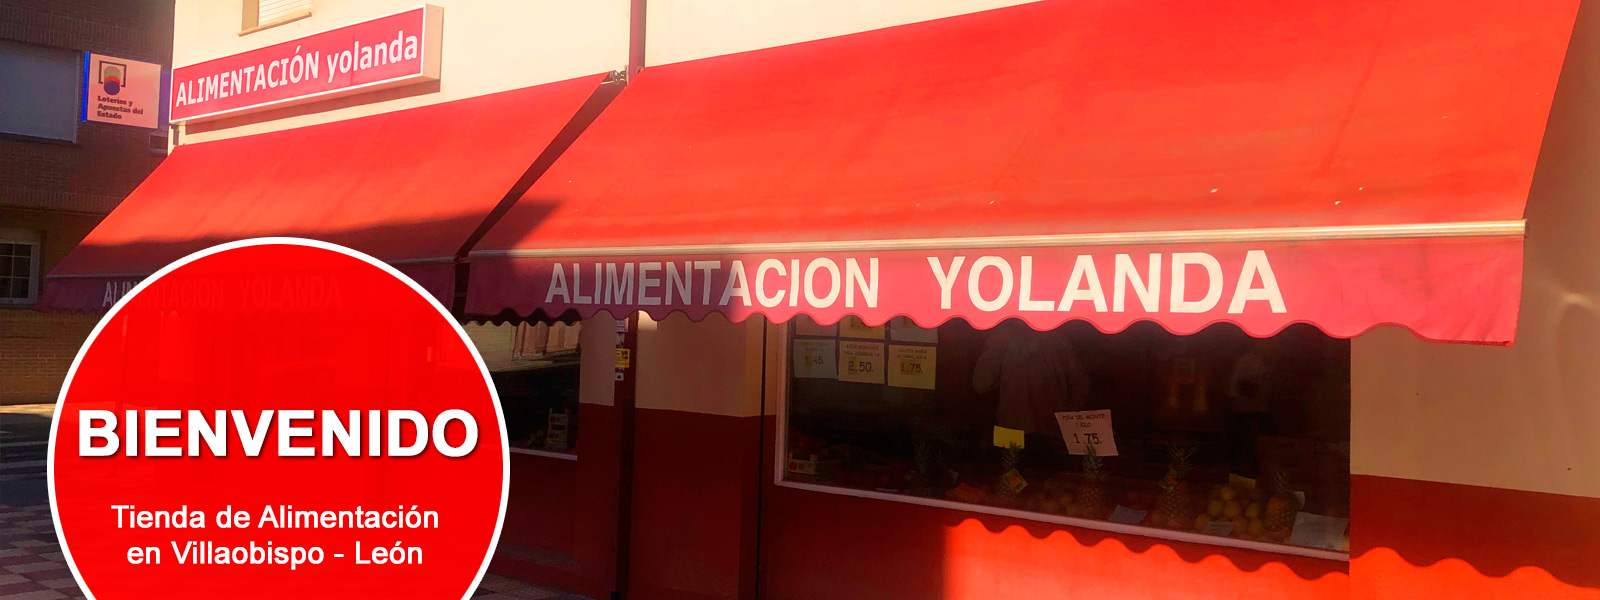 Alimentación Yolanda - Villaobispo - León